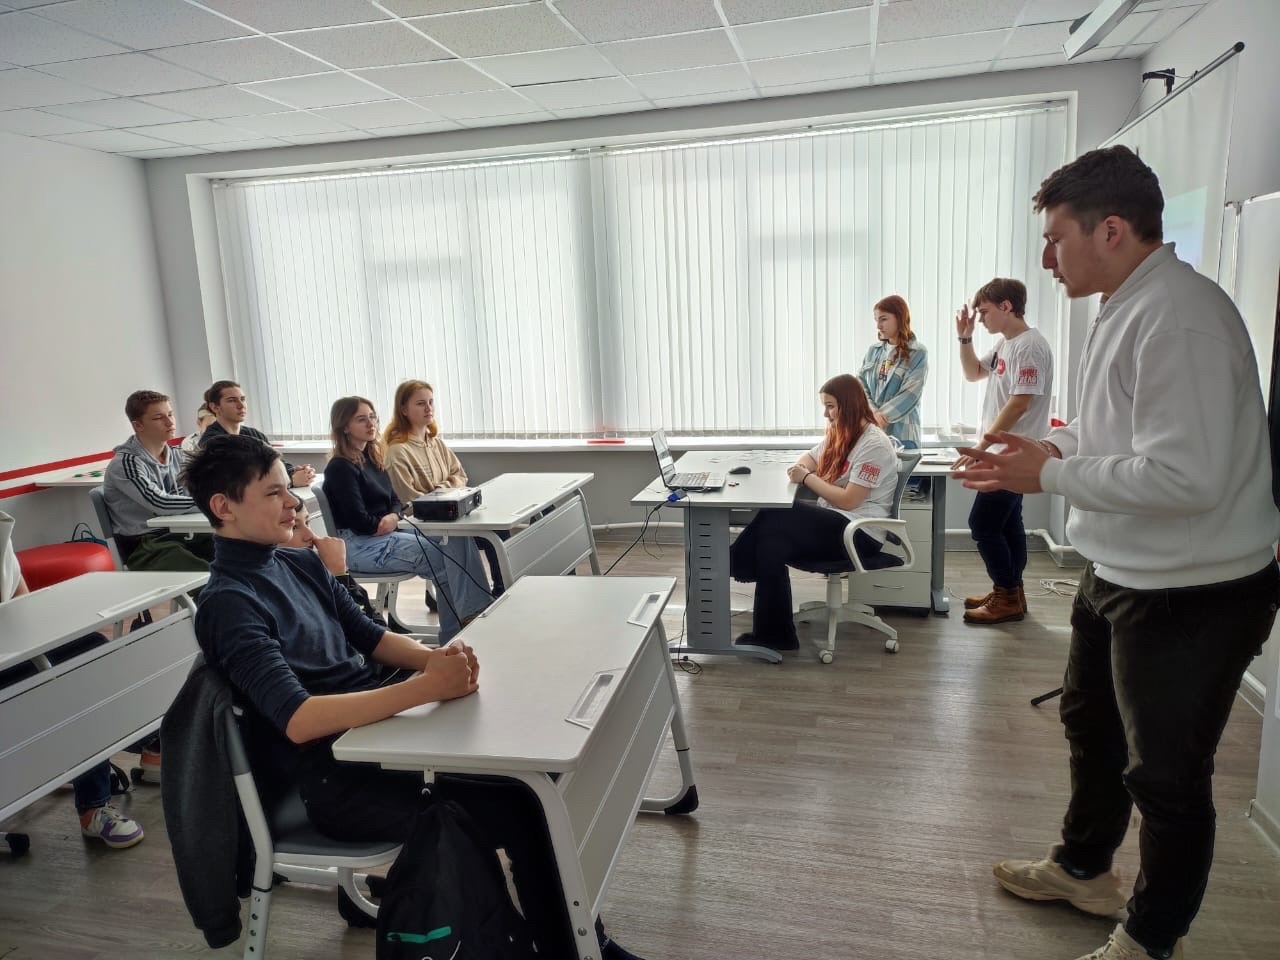 Сегодня прошла встреча обучающихся 8-11 классов с представителями &amp;quot;Новомосковского политехнического колледжа&amp;quot;.